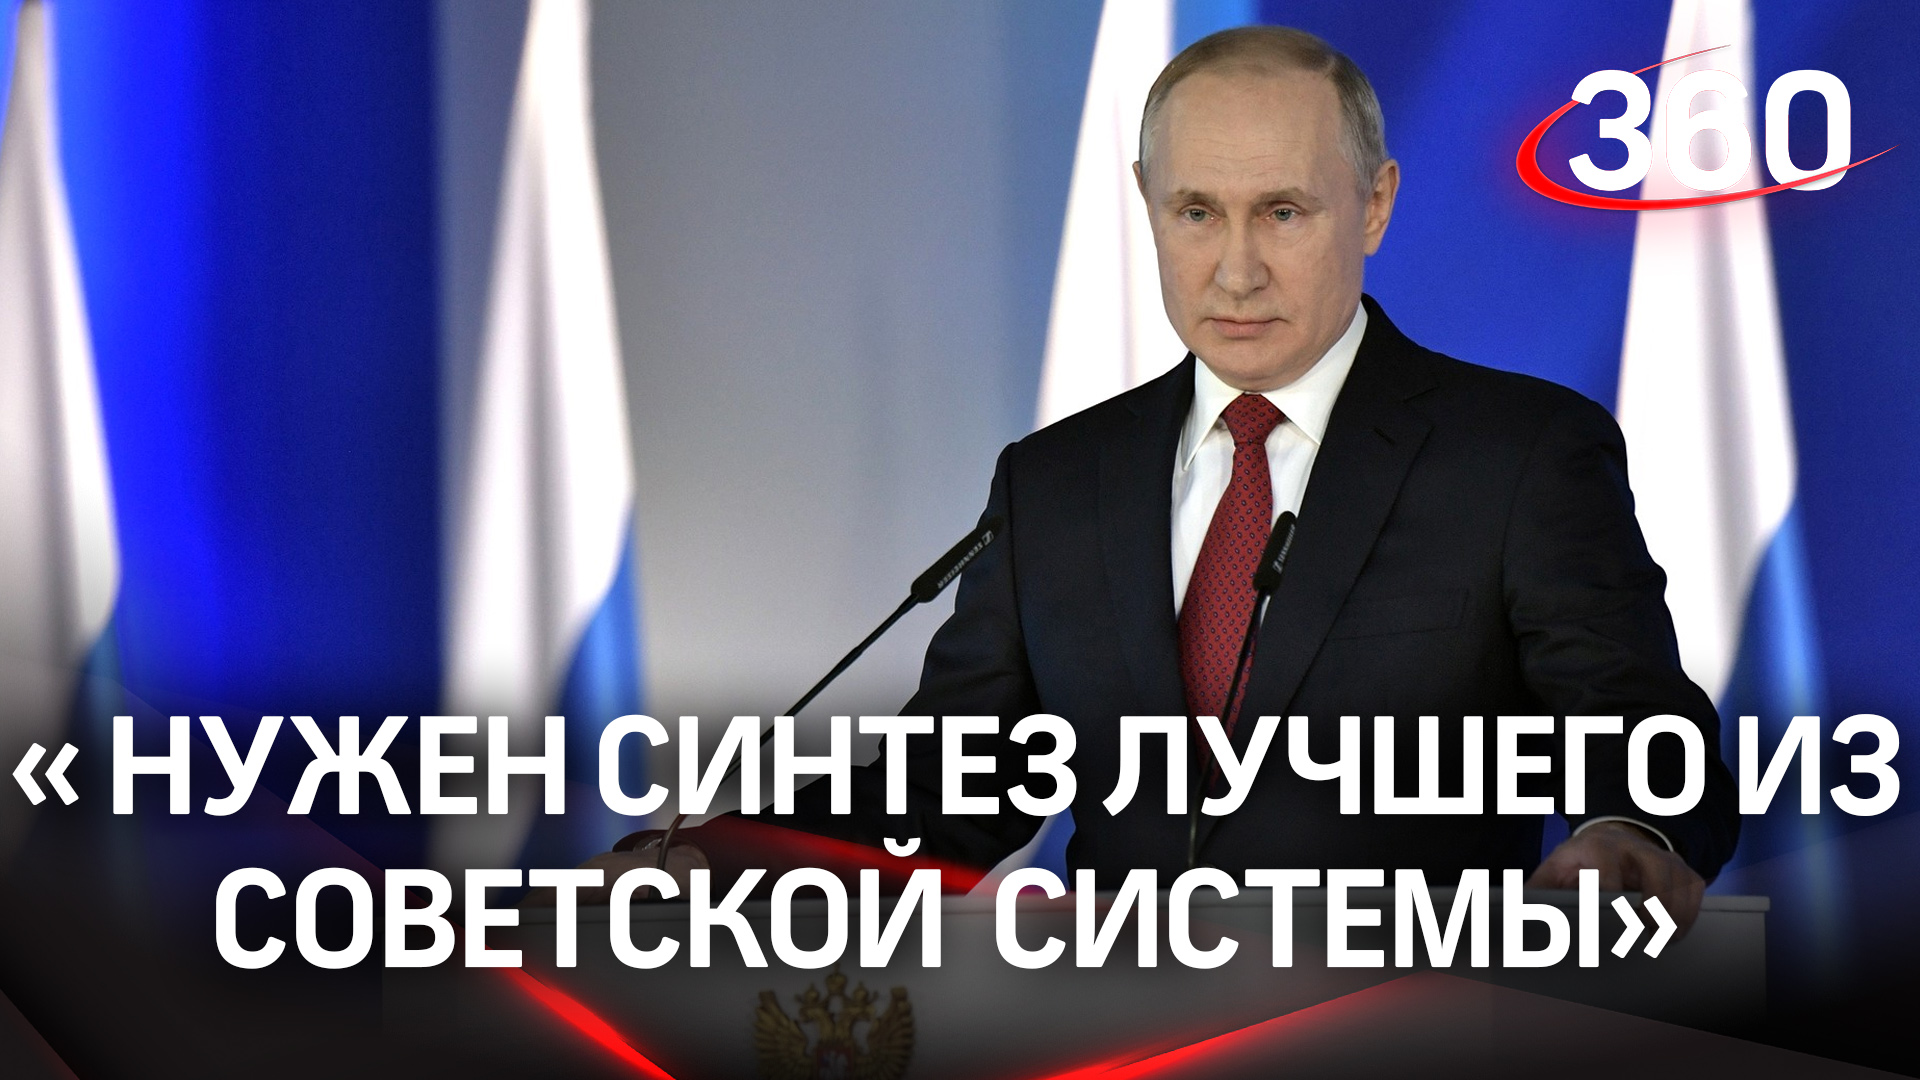 Владимир Путин отметил важность изменений в сфере высшего образования